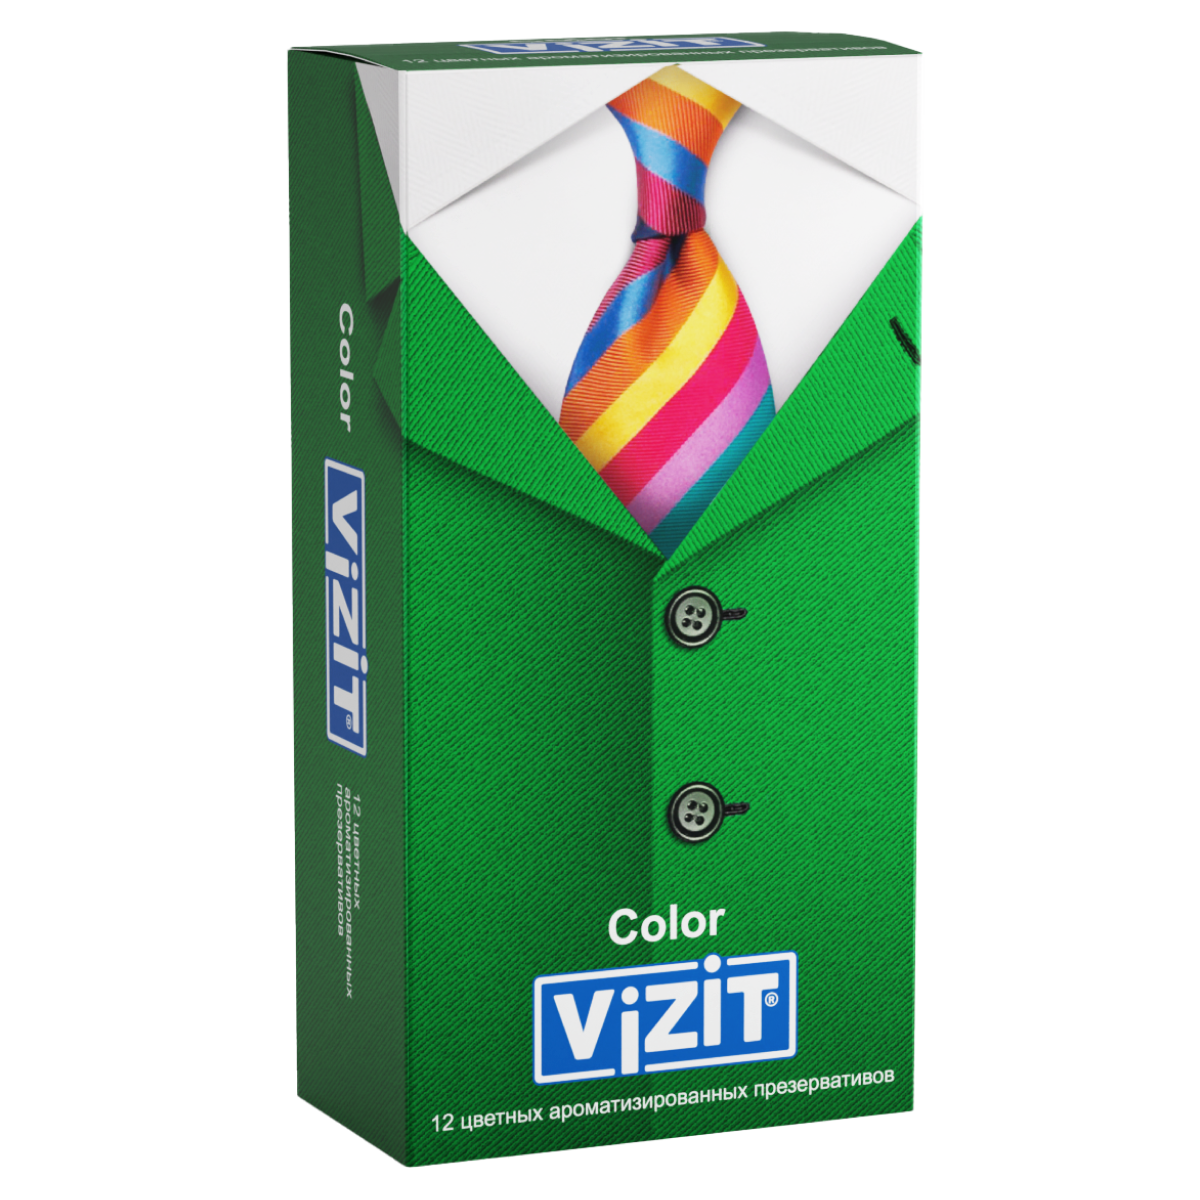 Презервативы VIZIT Color Цветные ароматизированные 12 шт. (Richter)  - купить со скидкой